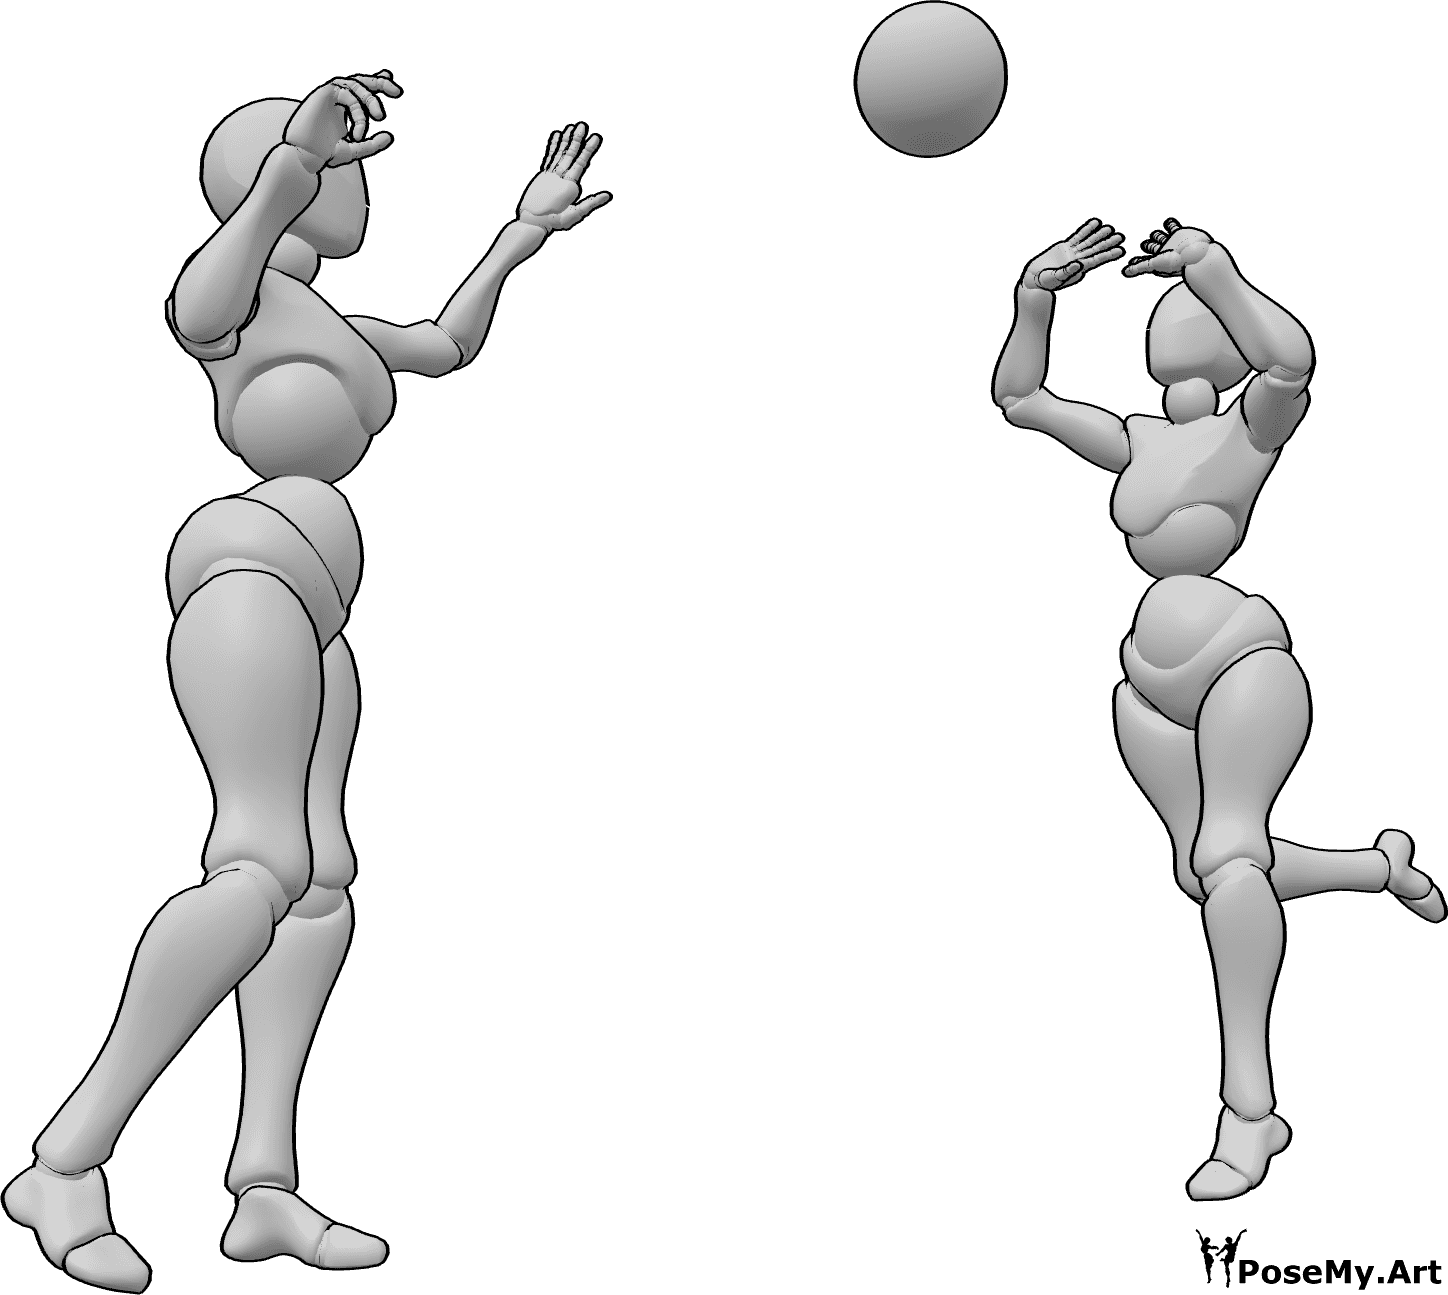 Referência de poses- Pose de mulher a atirar a bola - Duas mulheres estão a brincar com uma bola, passando-a uma à outra